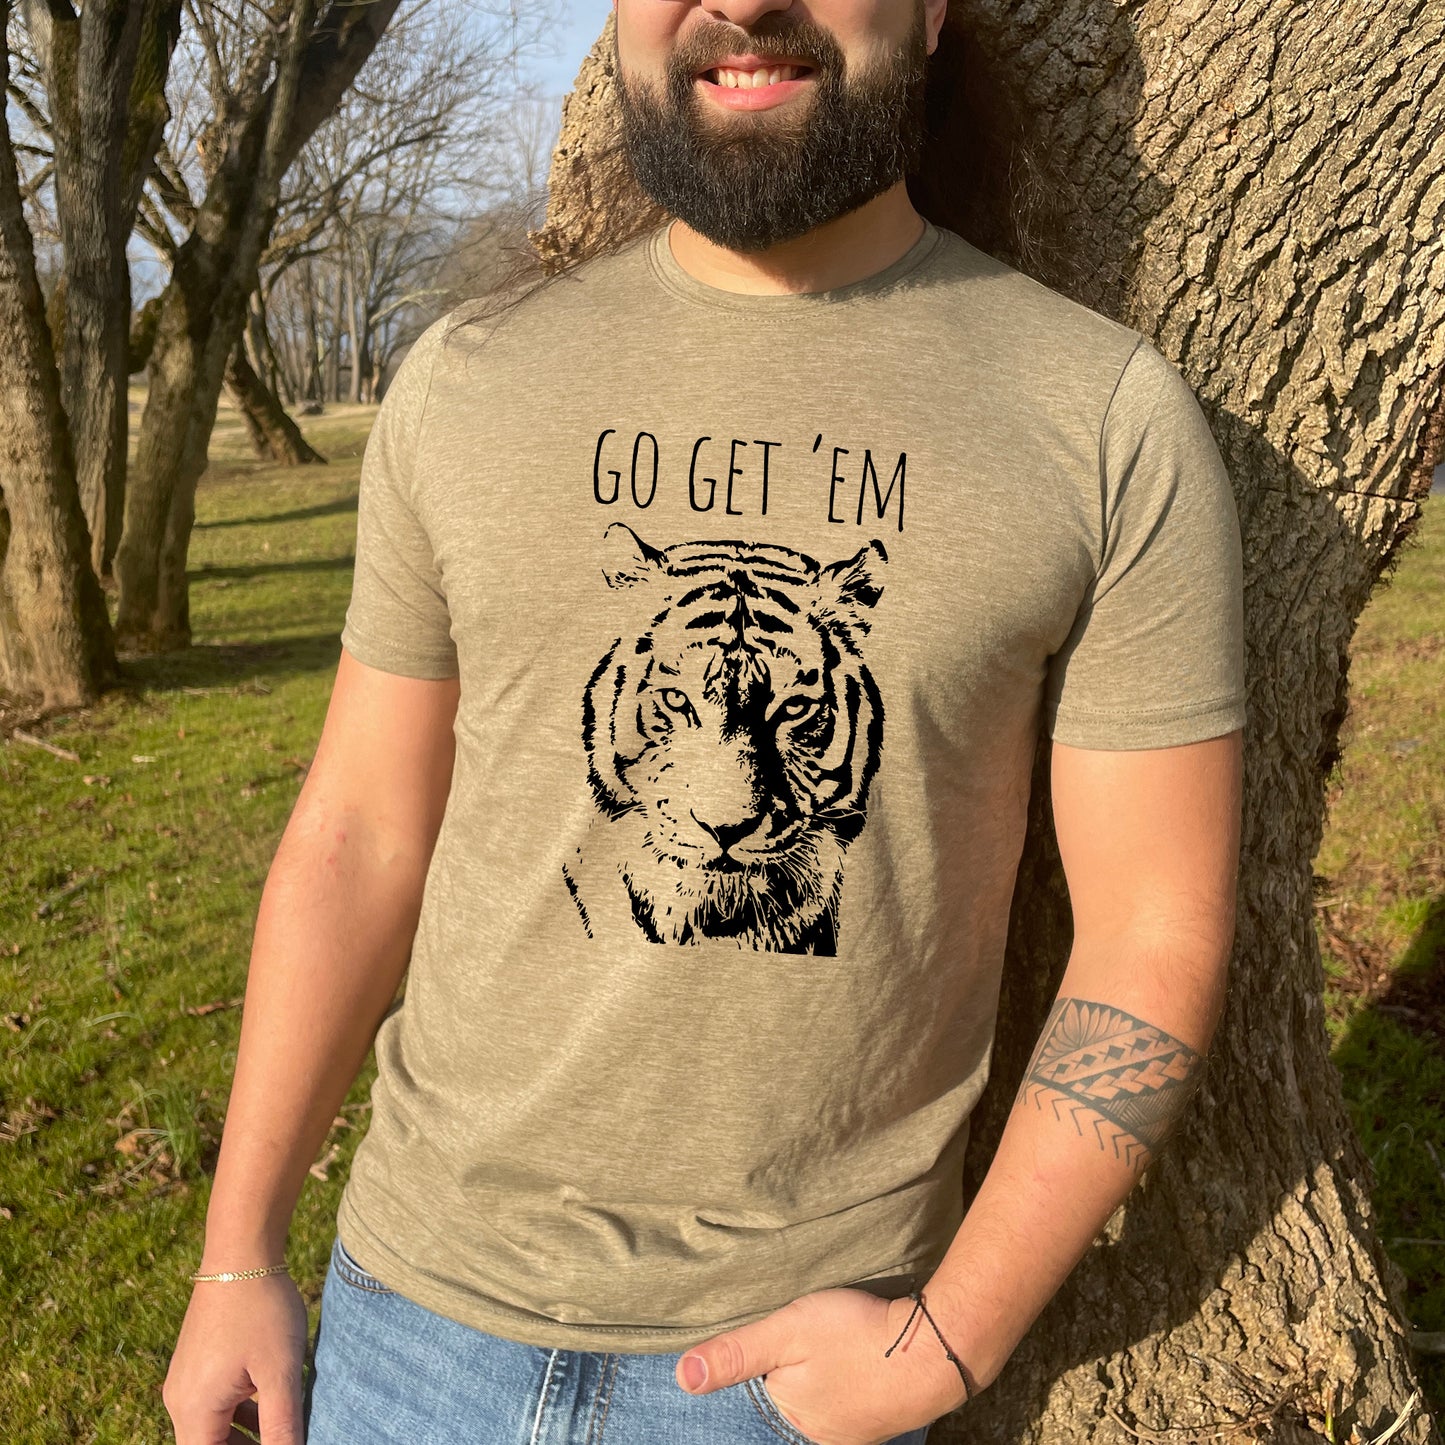 Go Get 'Em (Tiger) - Men's / Unisex Tee - Stonewash Blue or Sage